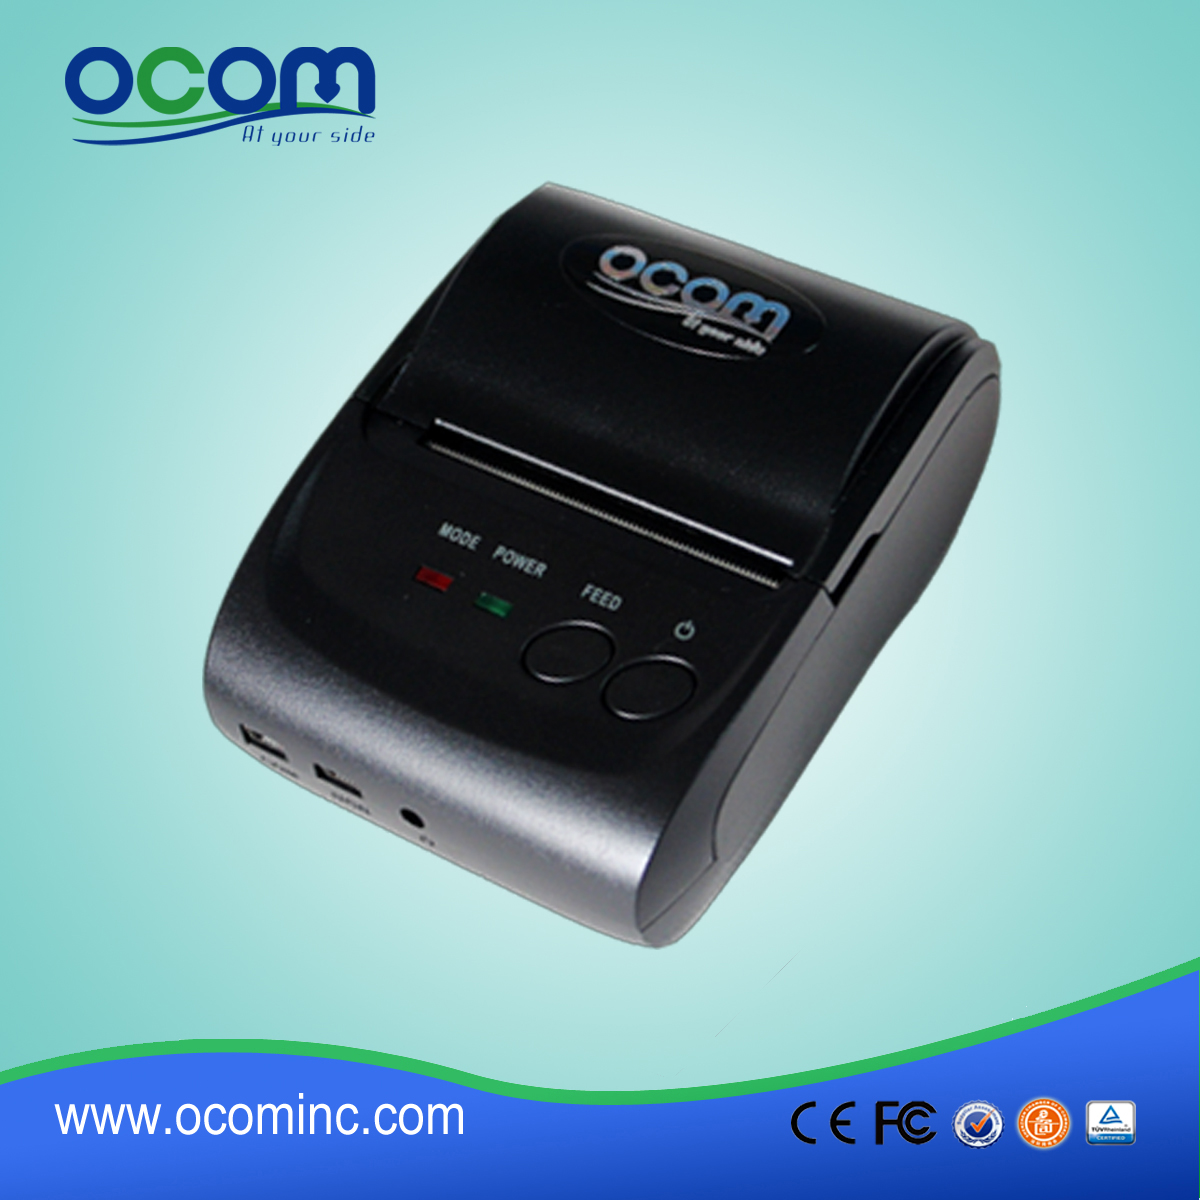 OCPP-M05: جودة عالية طابعة نقاط البيع سائق الحرارية، طابعة حرارية